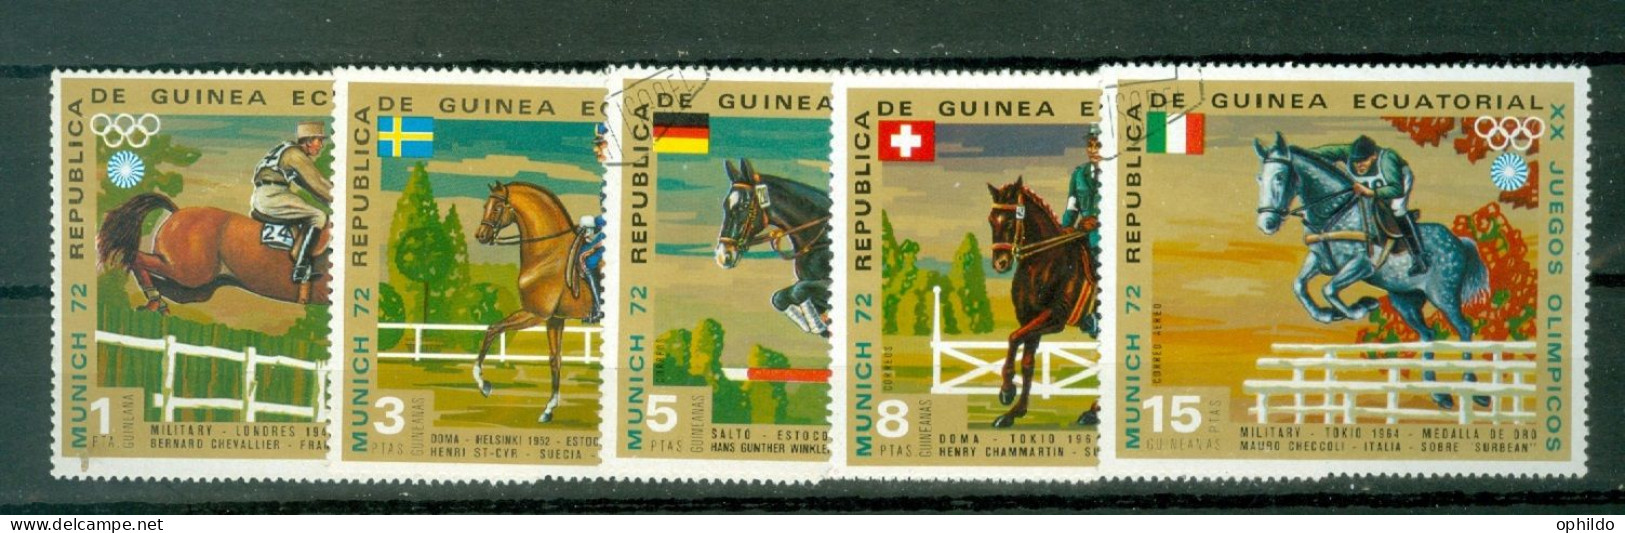 Guinée Equatoriale   5 Valeurs Obli  TB   Equitation   - Horses